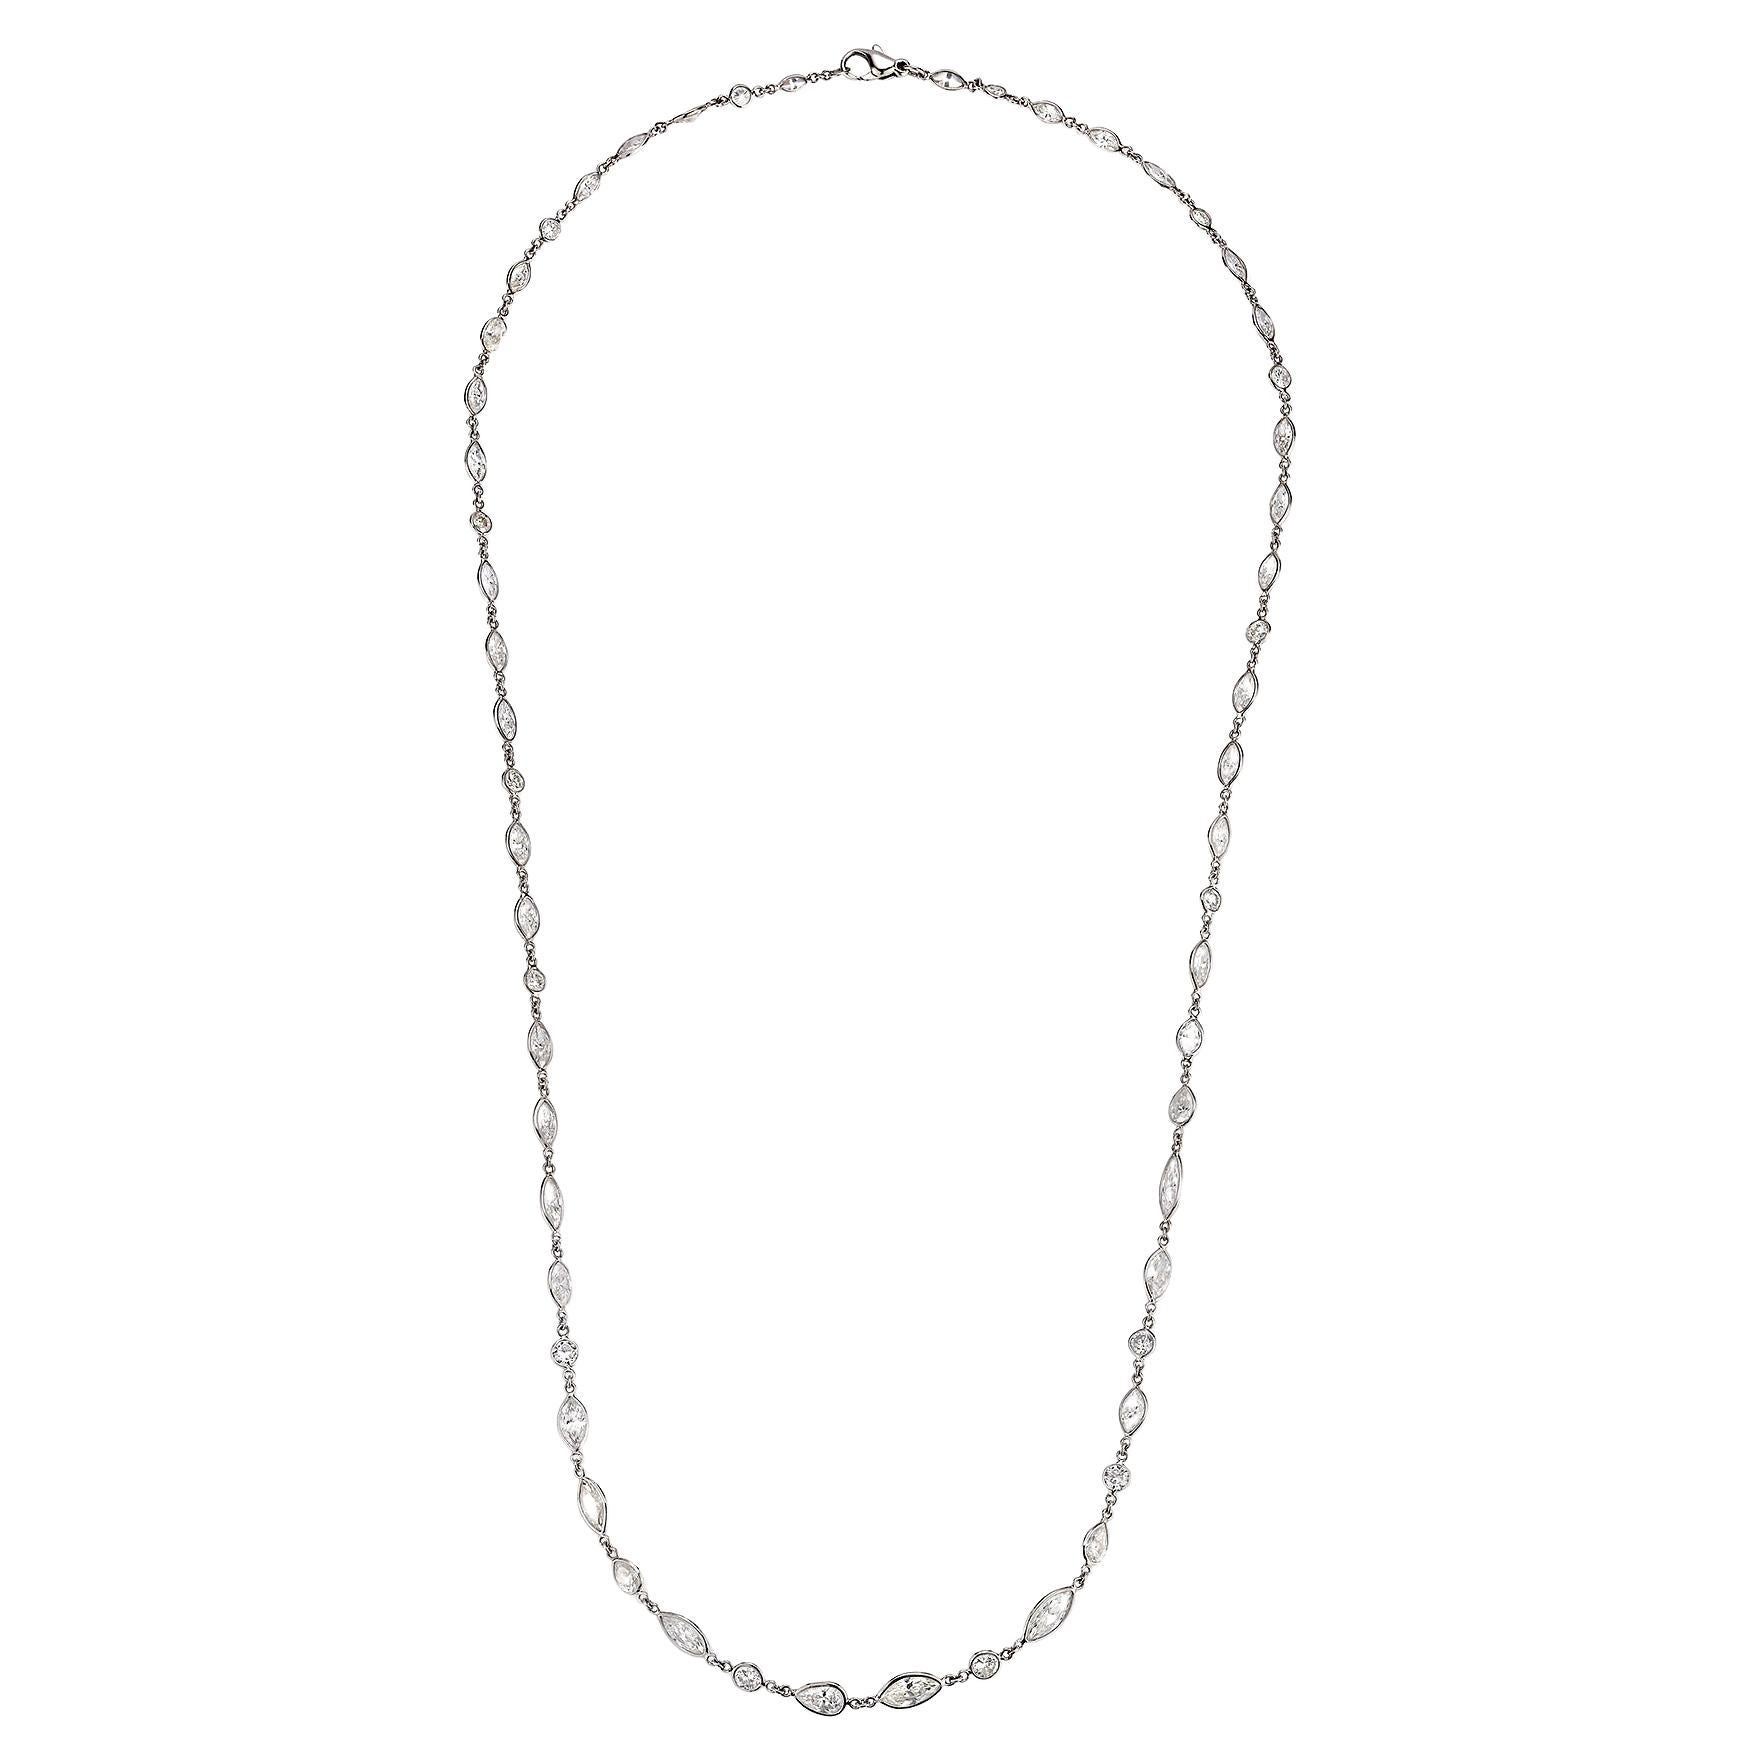 Long collier à chaîne avec diamants taille marquise et ronde